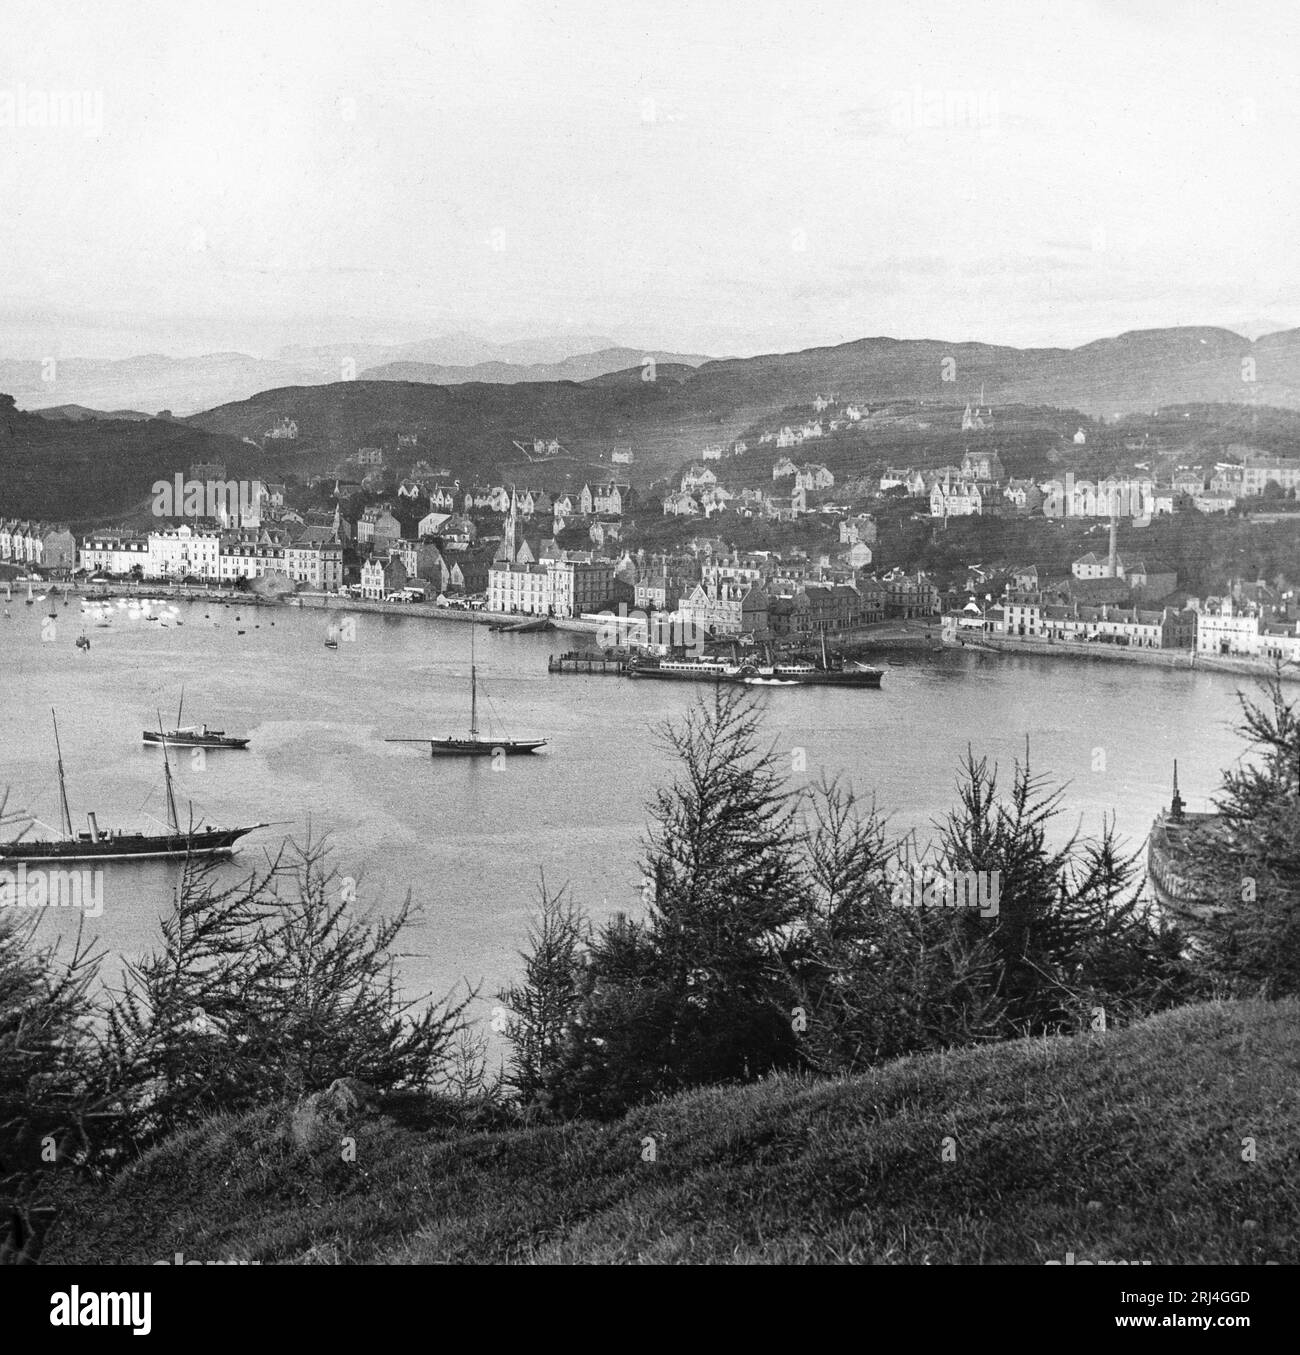 Une photographie en noir et blanc de la fin du 19e siècle montrant Oban en Écosse, avec de nombreux voiliers et navires à vapeur. Banque D'Images